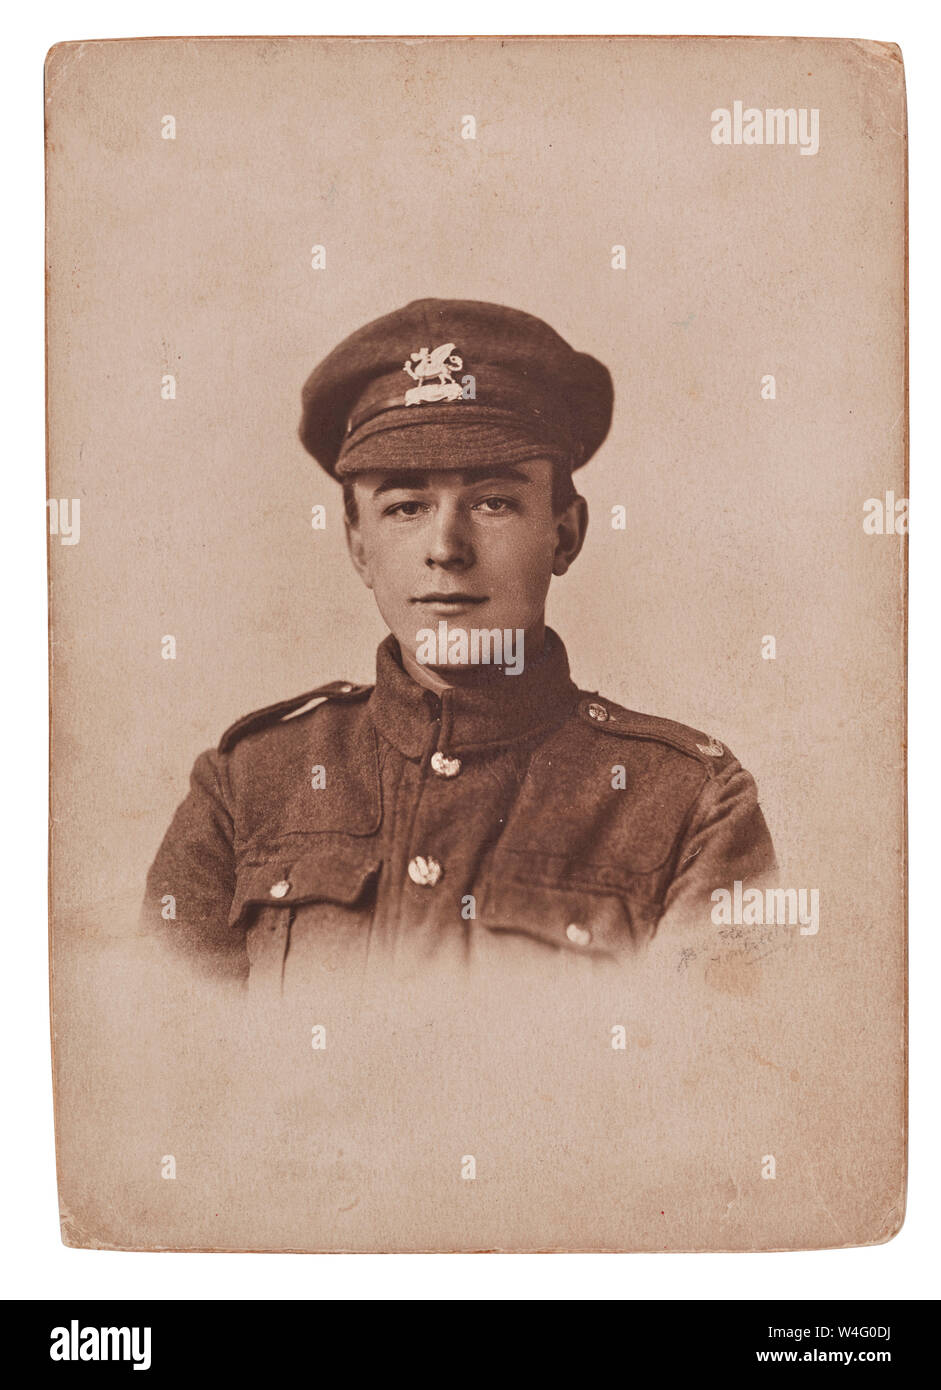 Portrait de soldat de la première guerre mondiale Richard Henry Cooper éventuellement prises à Tonbridge vers 1914 Banque D'Images